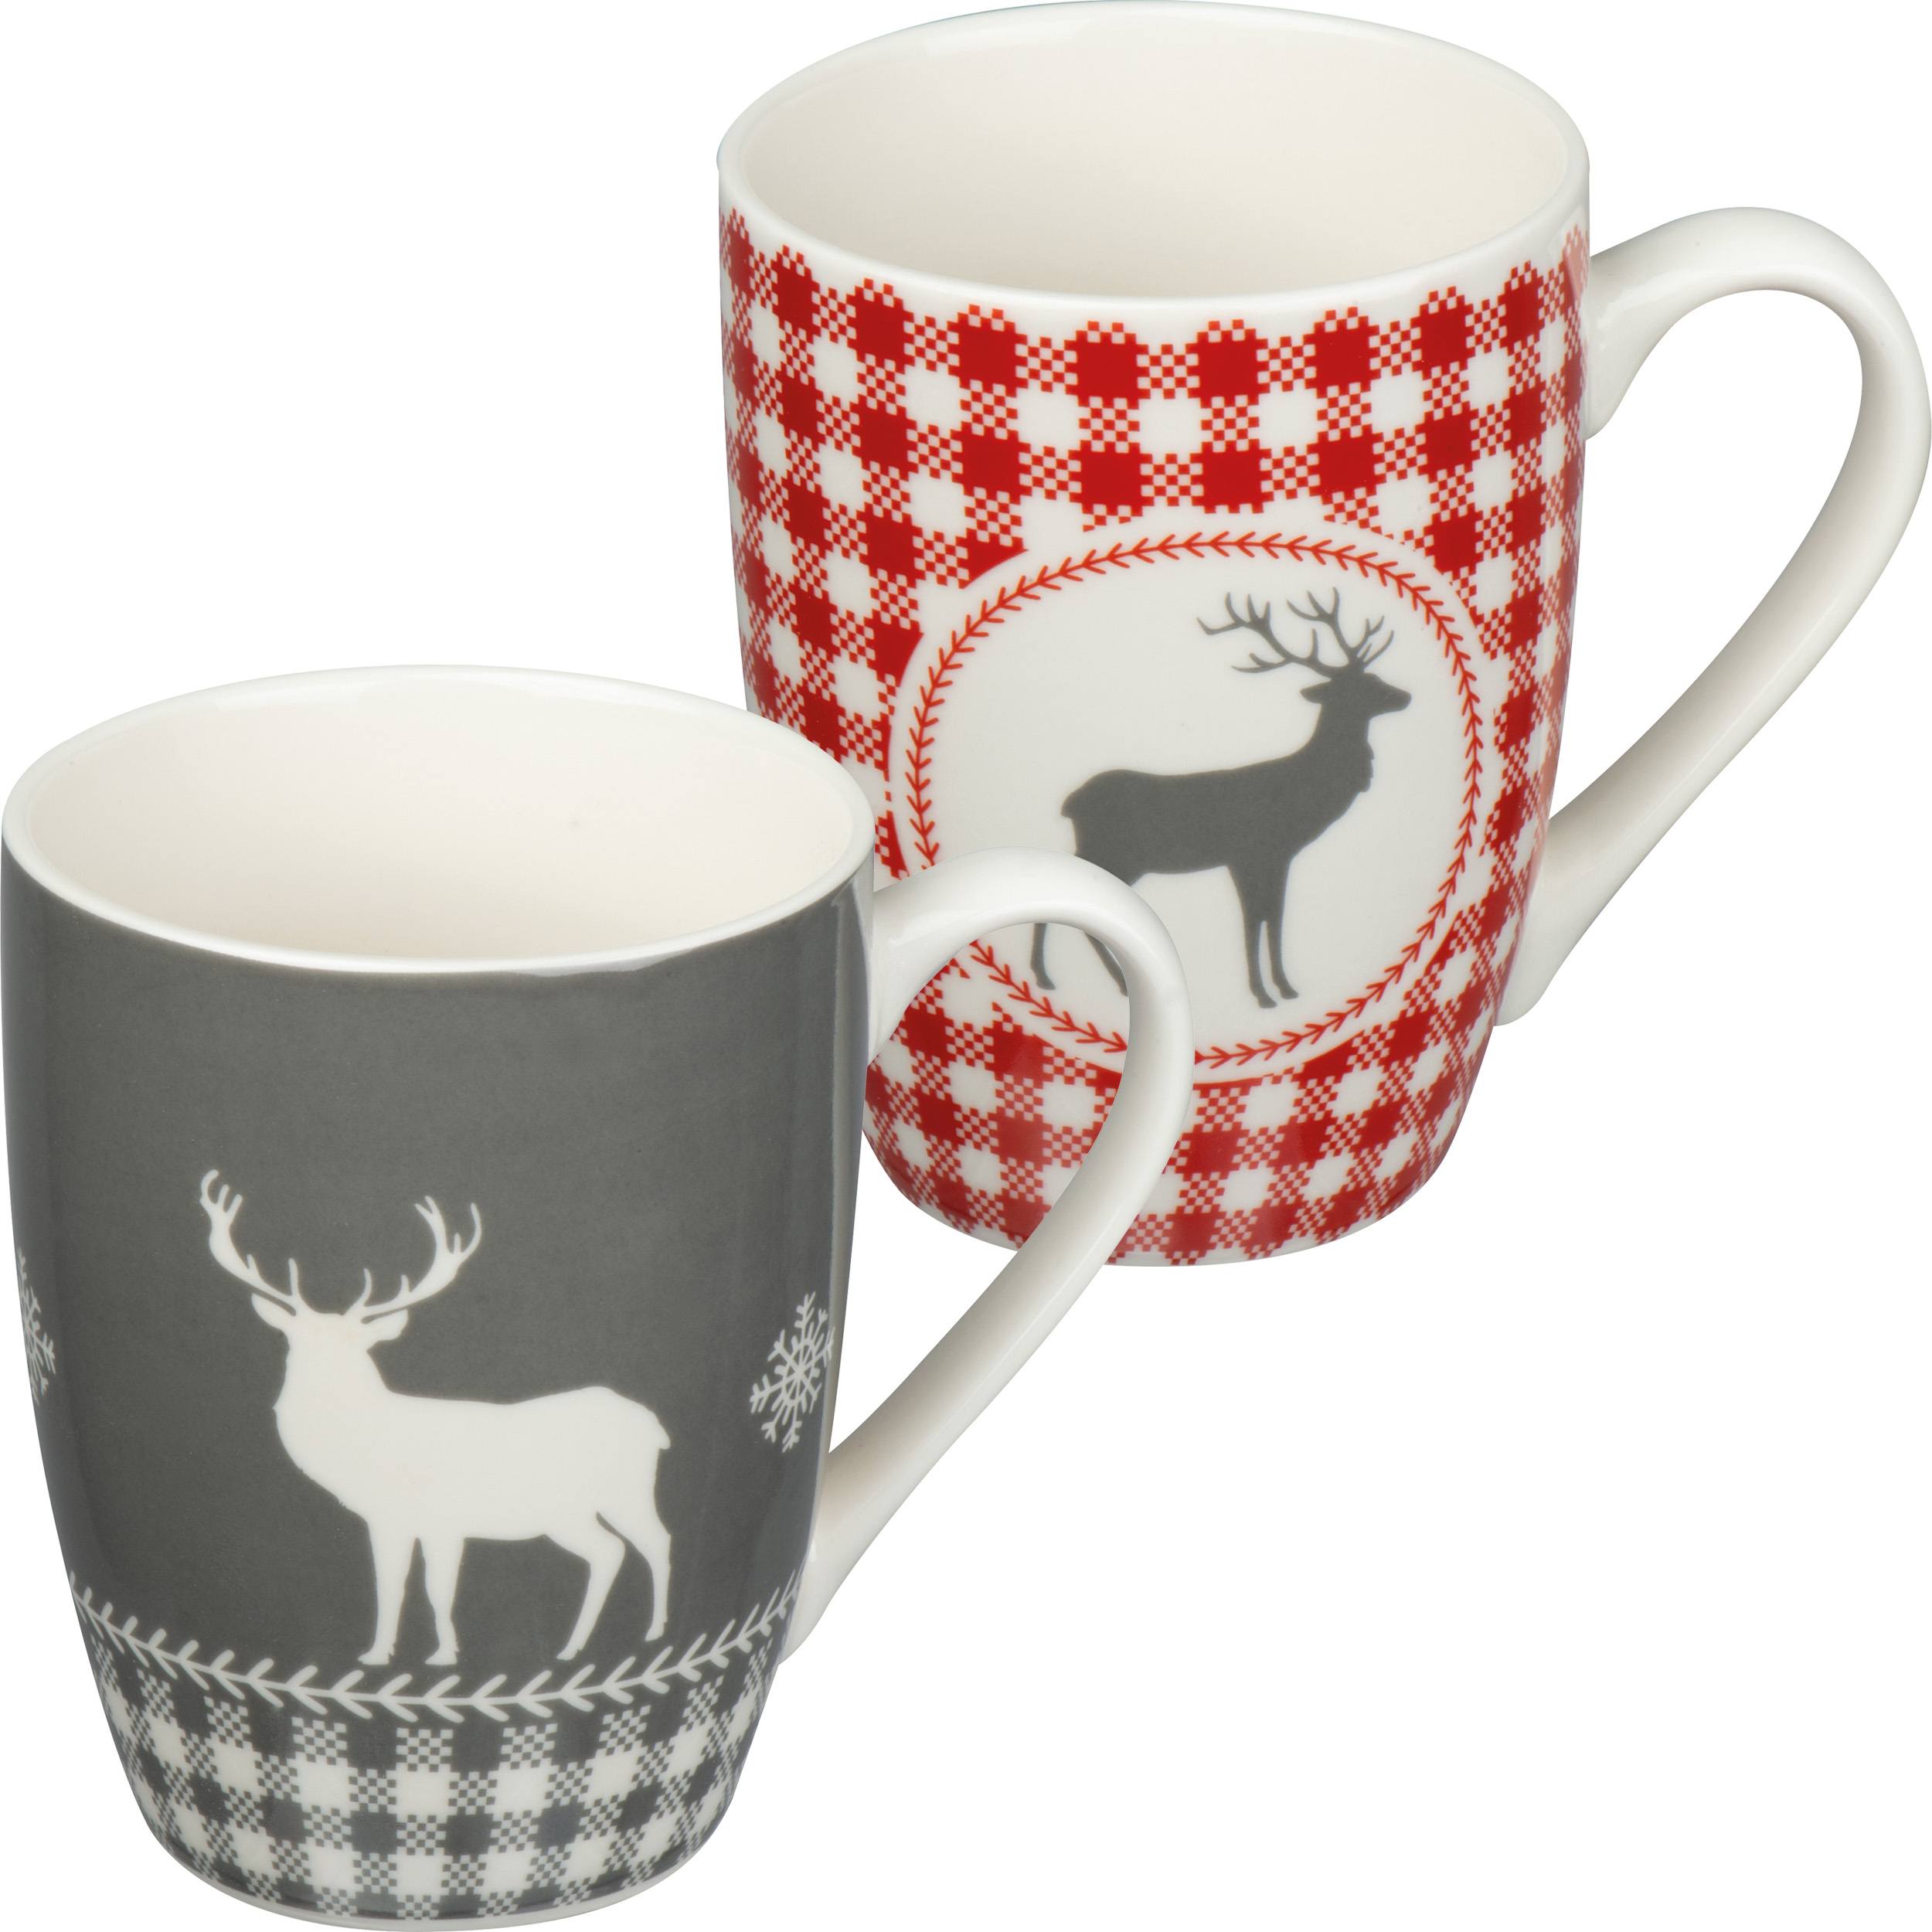 Set of 2 Christmas mugs